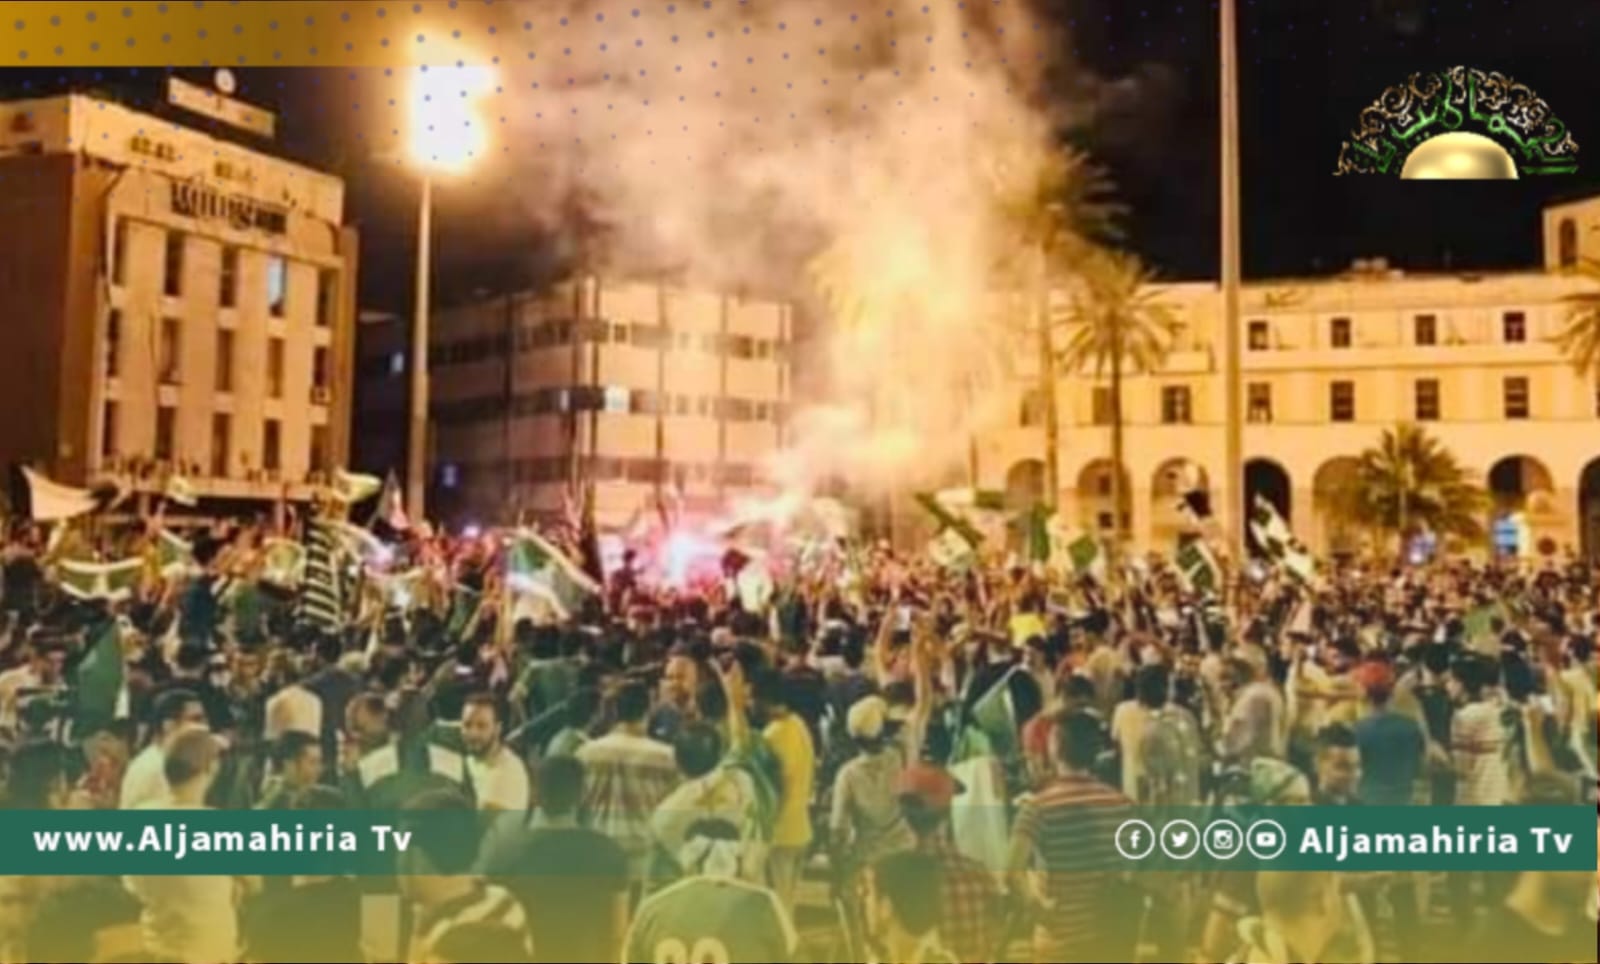 المواطنون يحتفلون بفوز فريق الأهلي طرابلس ومشجعي الاتحاد يعتبرون بلحاج "شؤم"